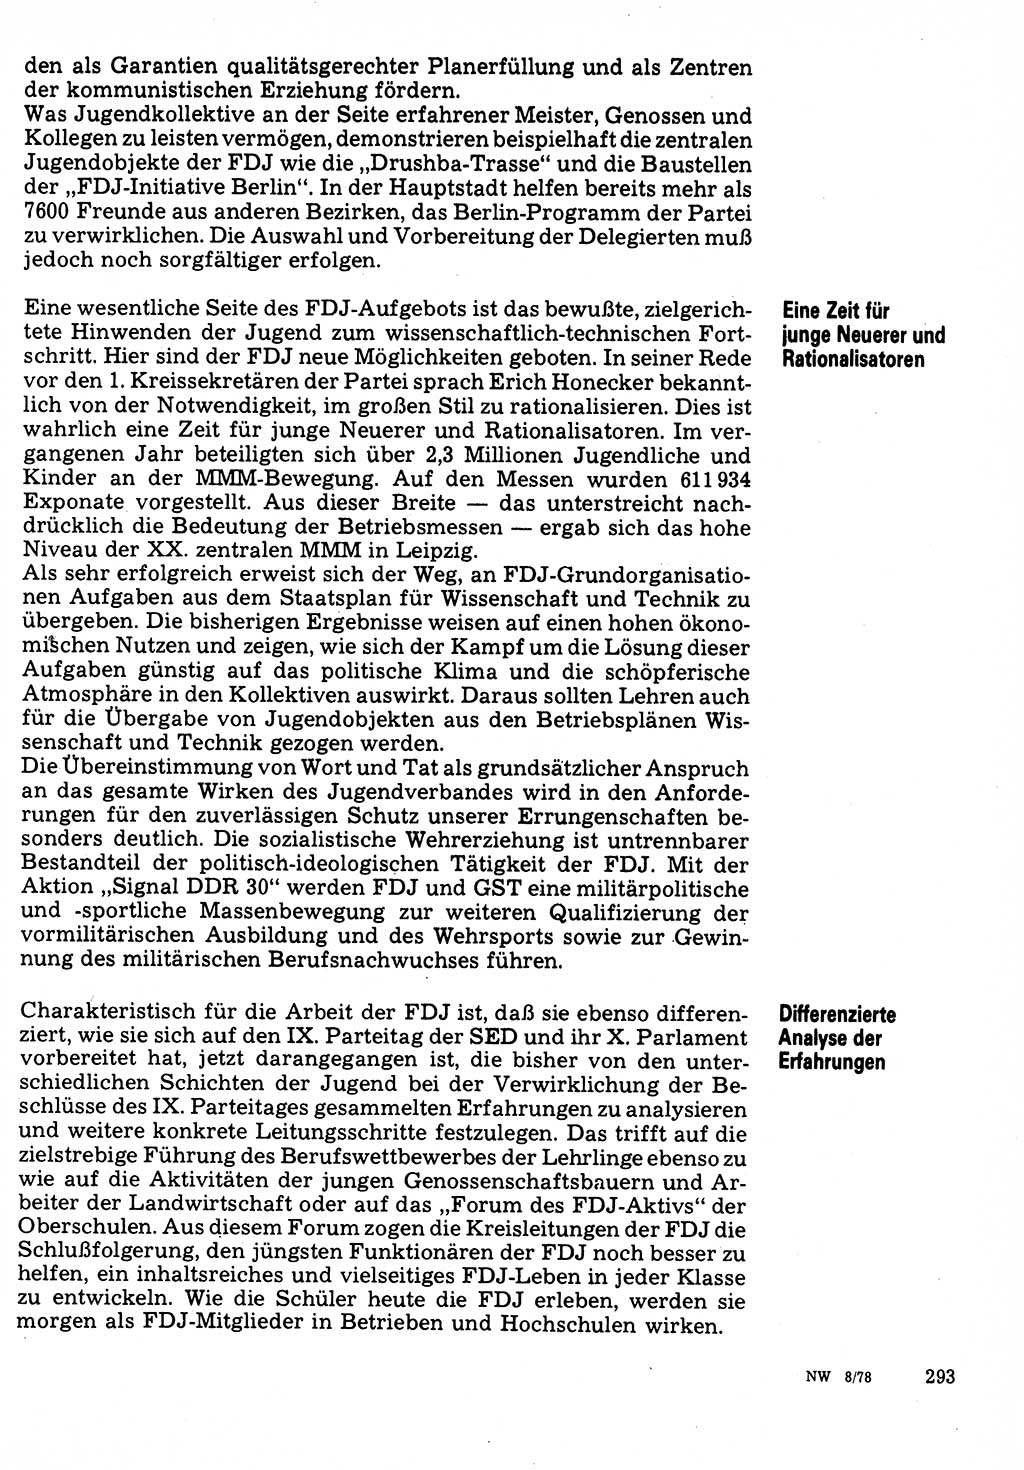 Neuer Weg (NW), Organ des Zentralkomitees (ZK) der SED (Sozialistische Einheitspartei Deutschlands) für Fragen des Parteilebens, 33. Jahrgang [Deutsche Demokratische Republik (DDR)] 1978, Seite 293 (NW ZK SED DDR 1978, S. 293)